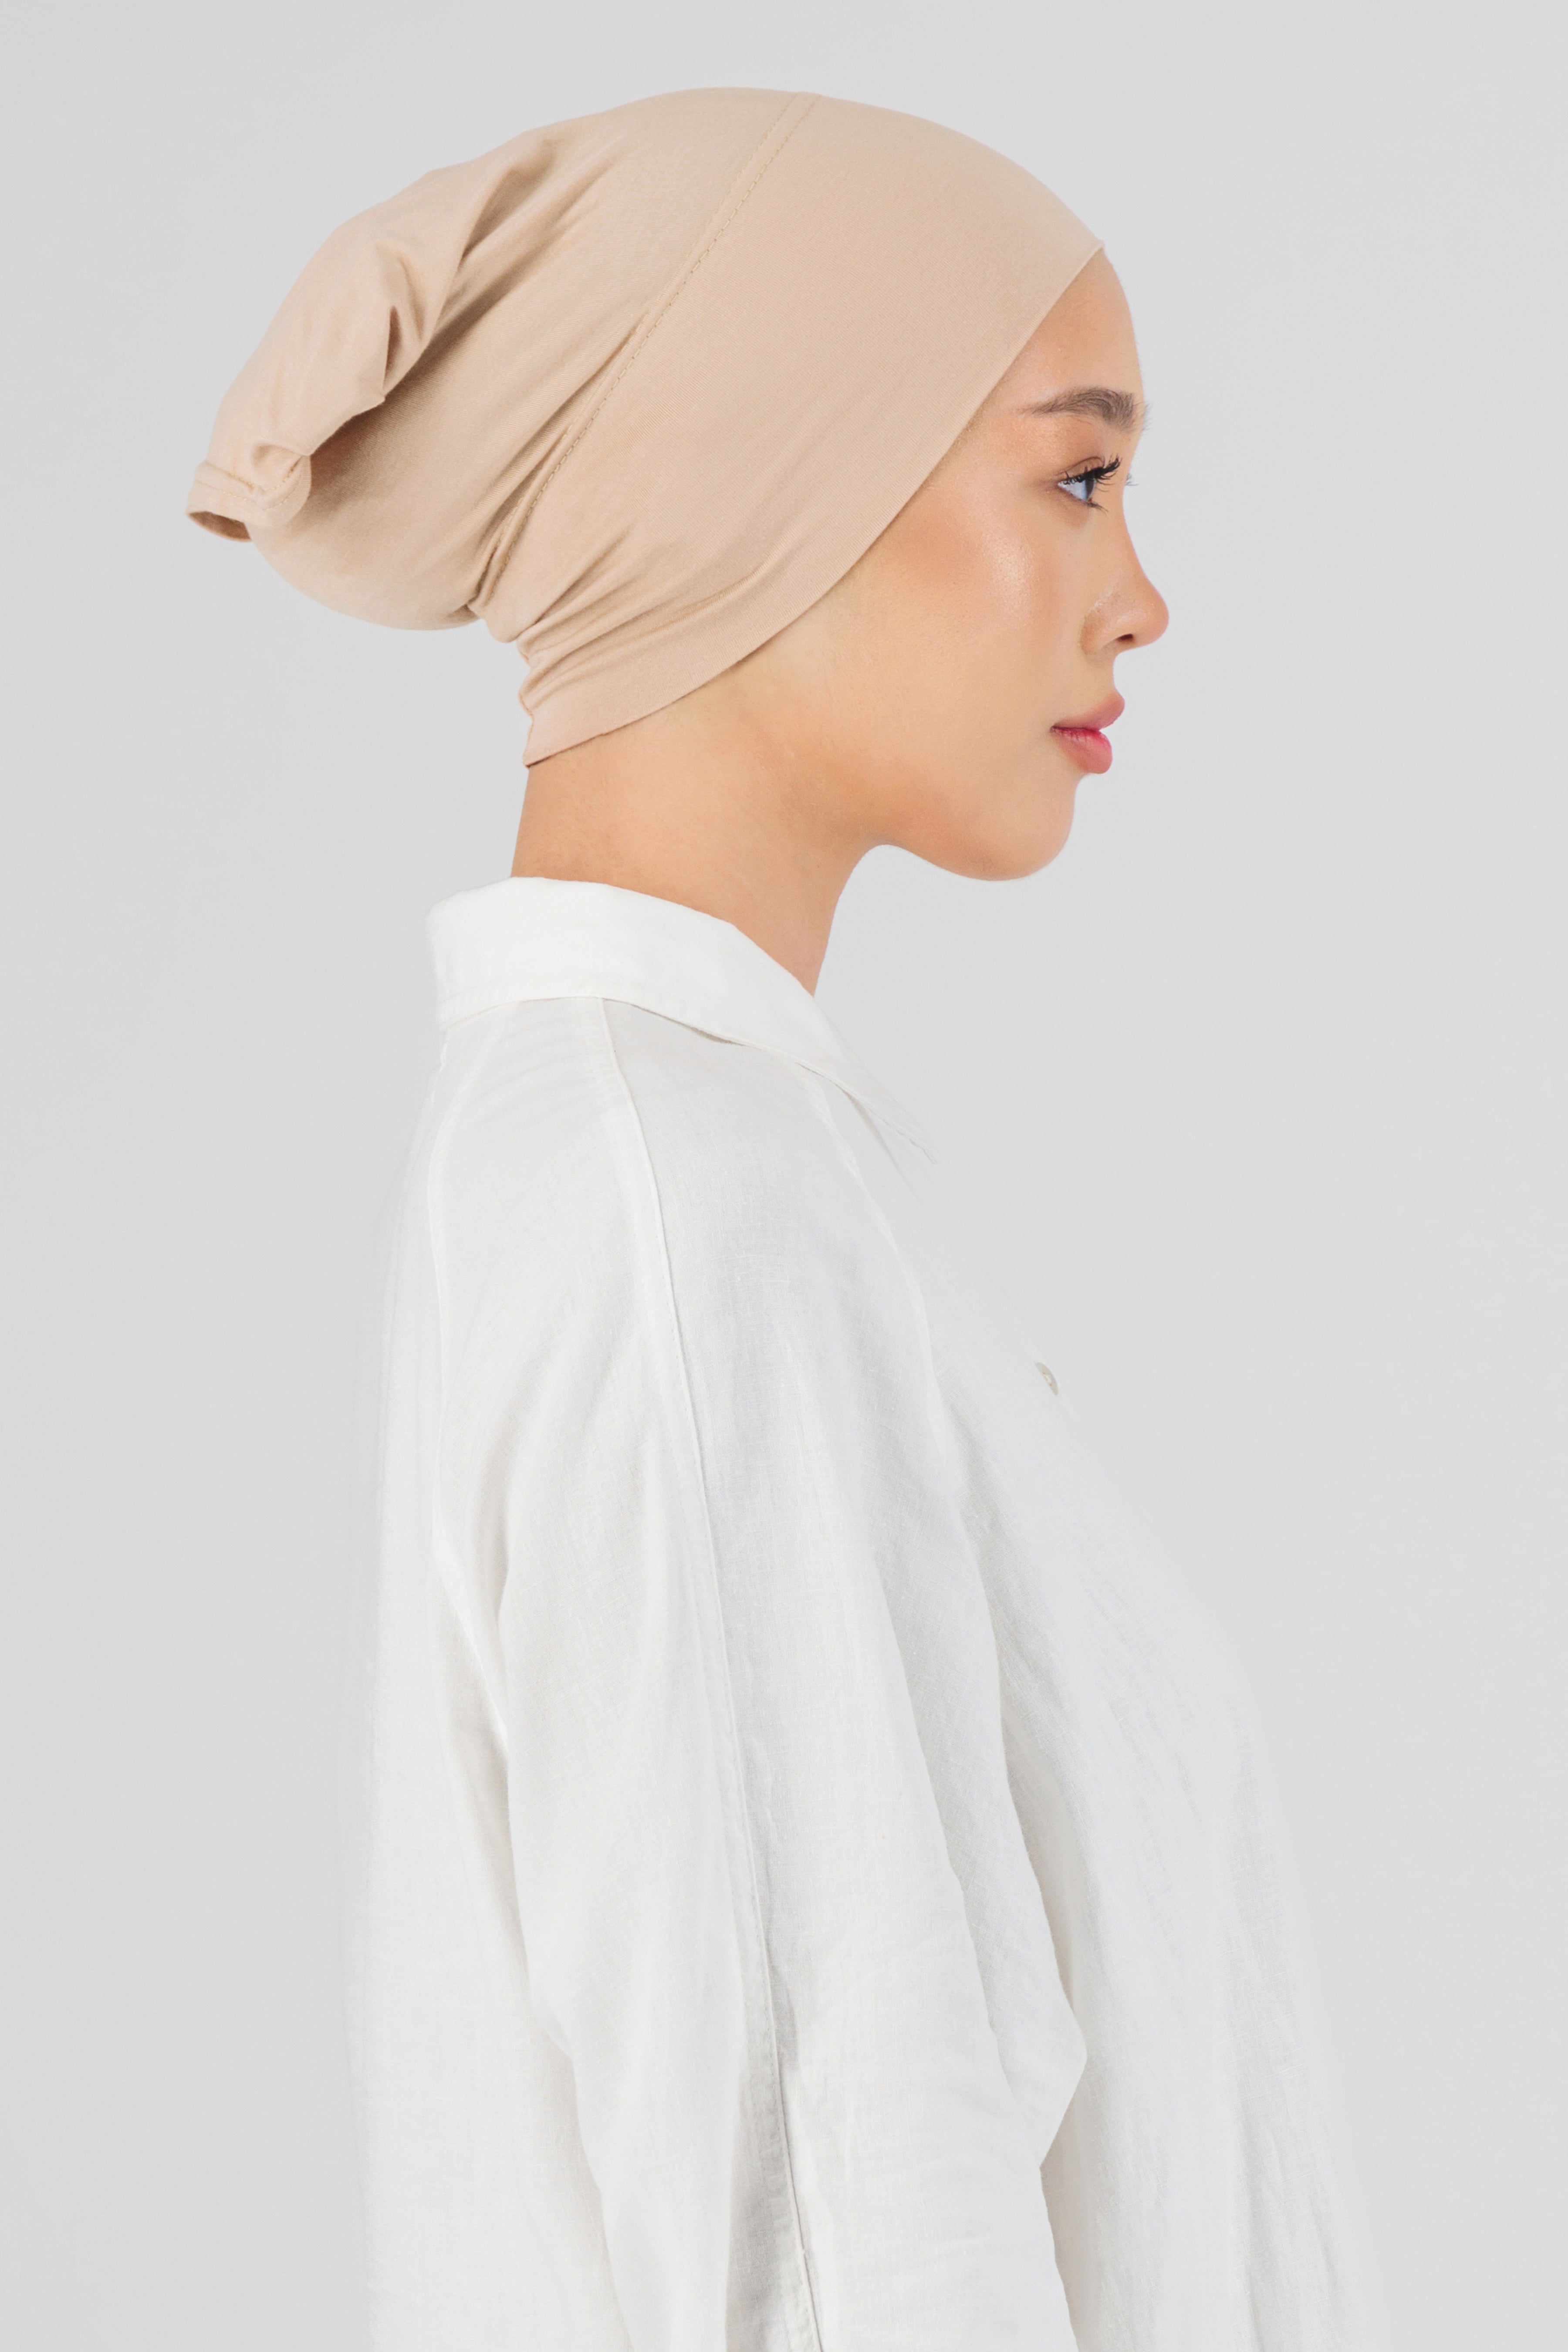 US - Matching Chiffon Hijab Set - Peaches